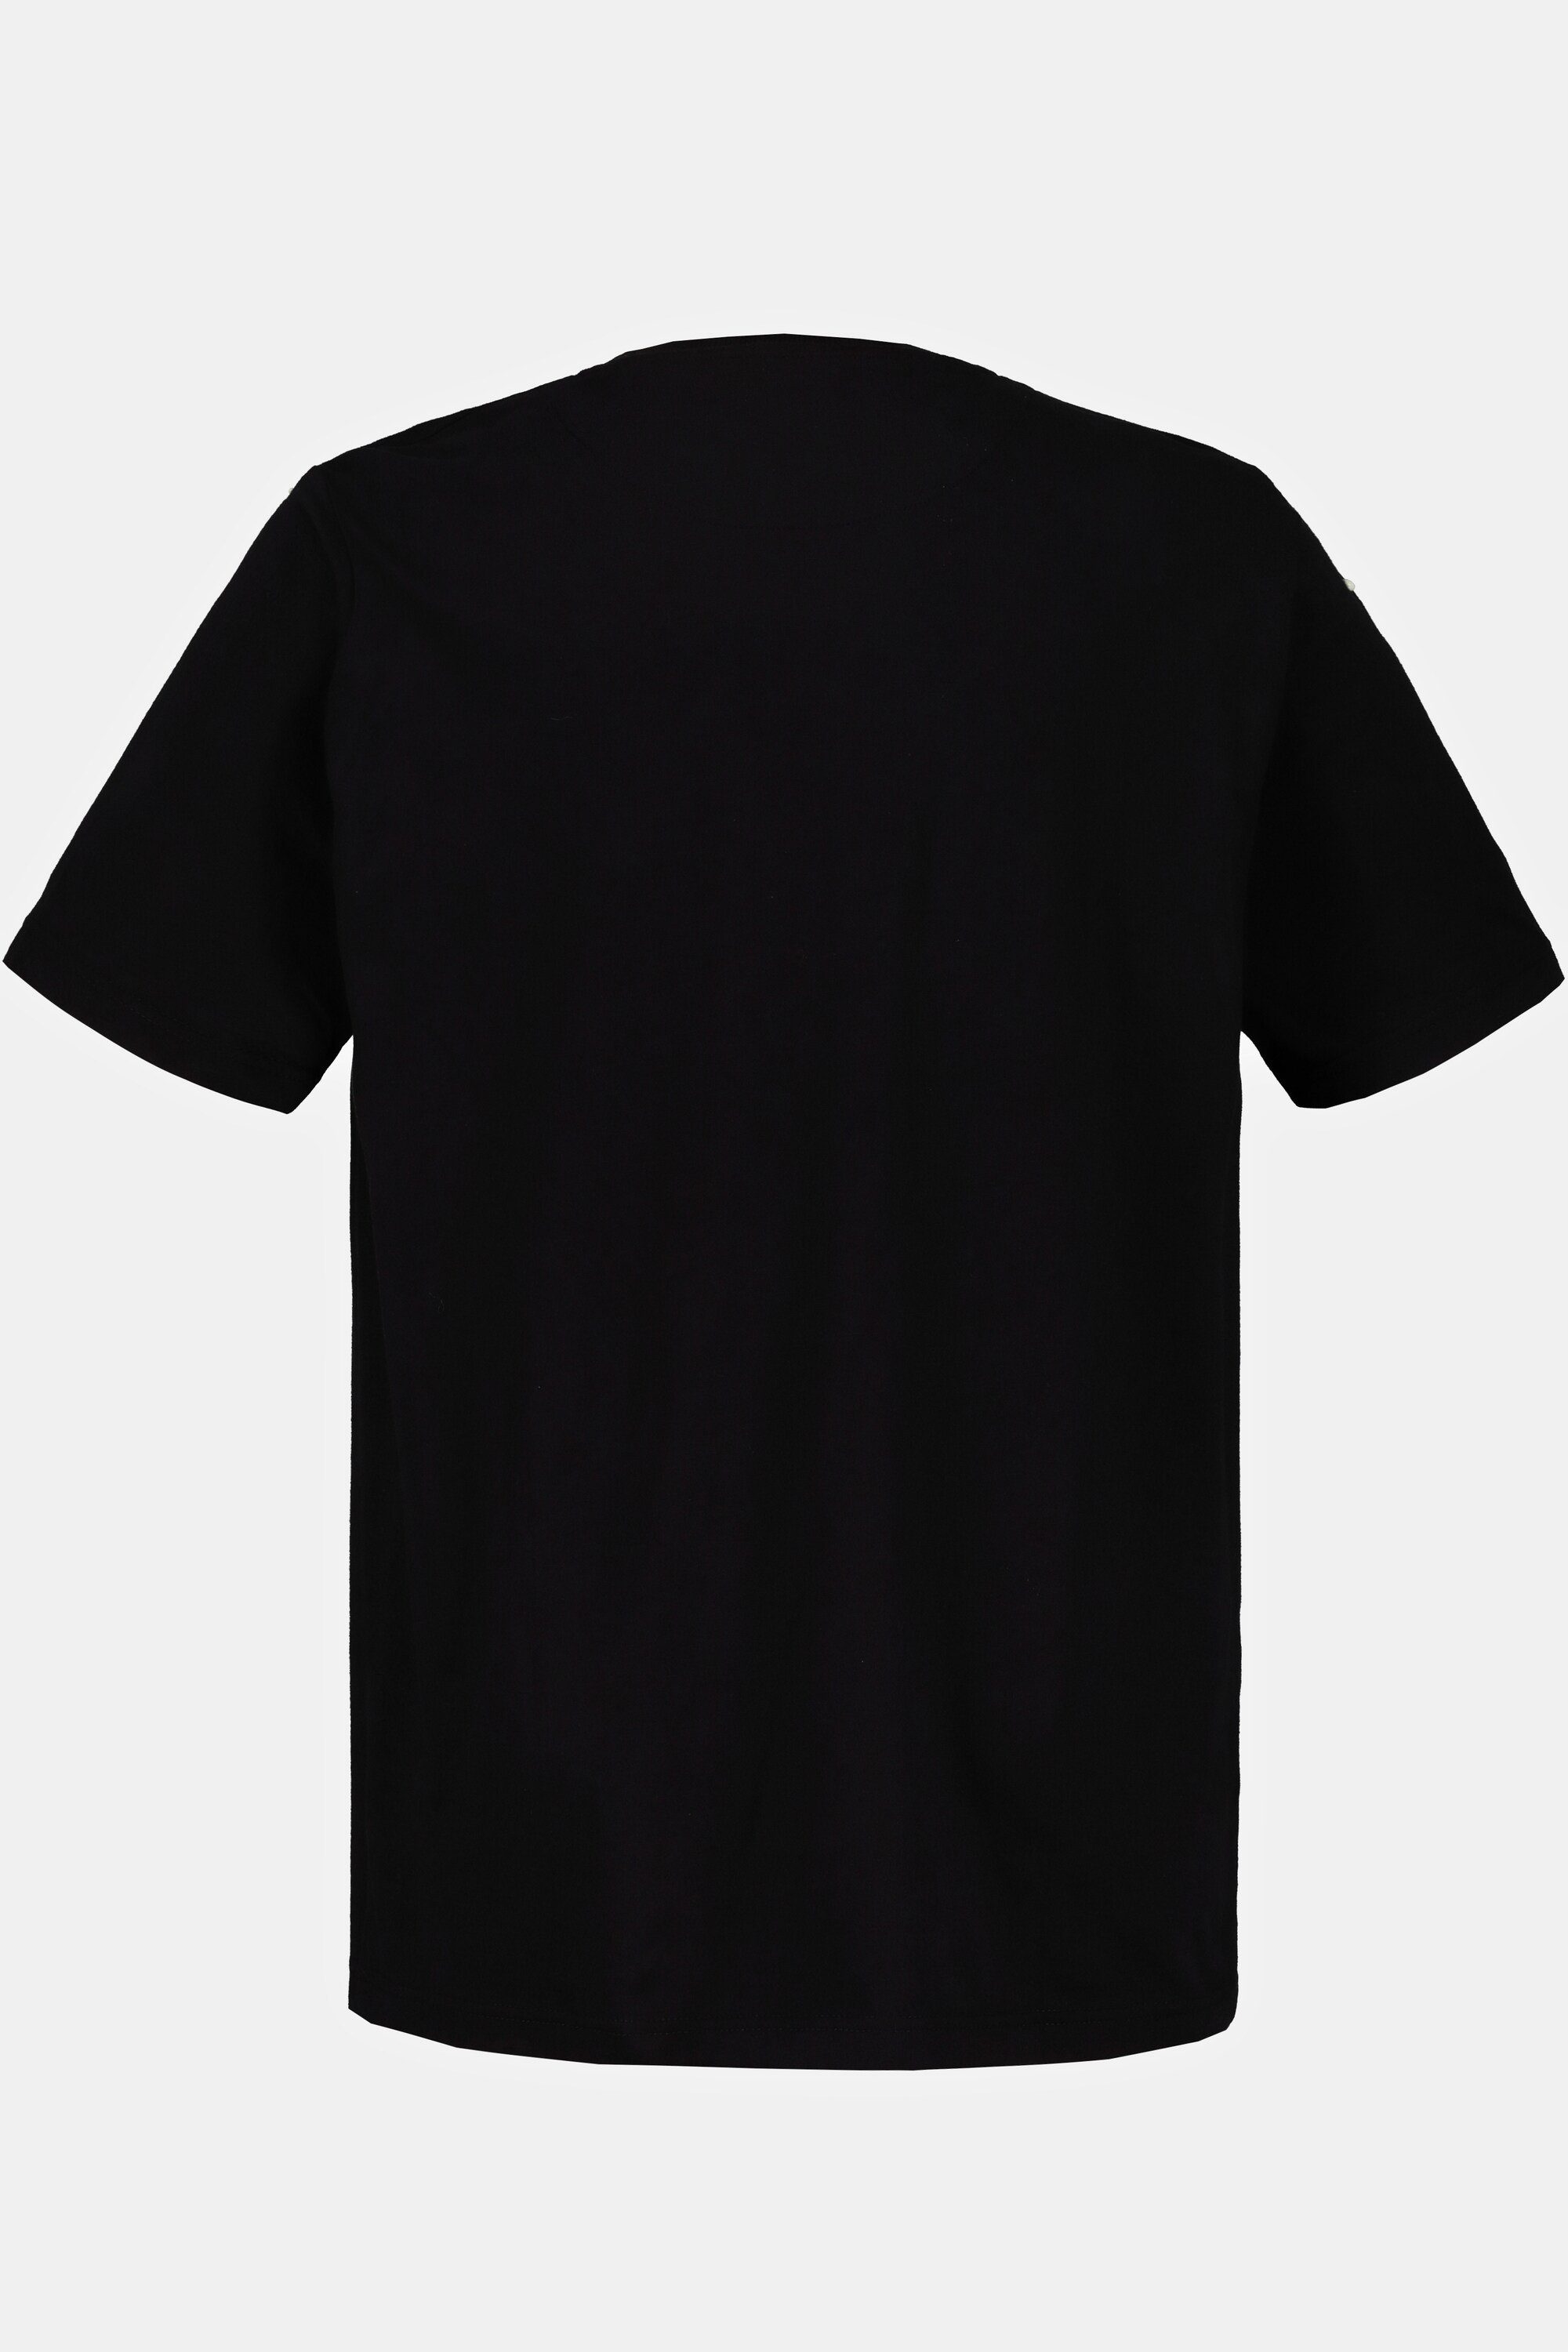 T-Shirt Bandshirt T-Shirt KISS JP1880 Halbarm